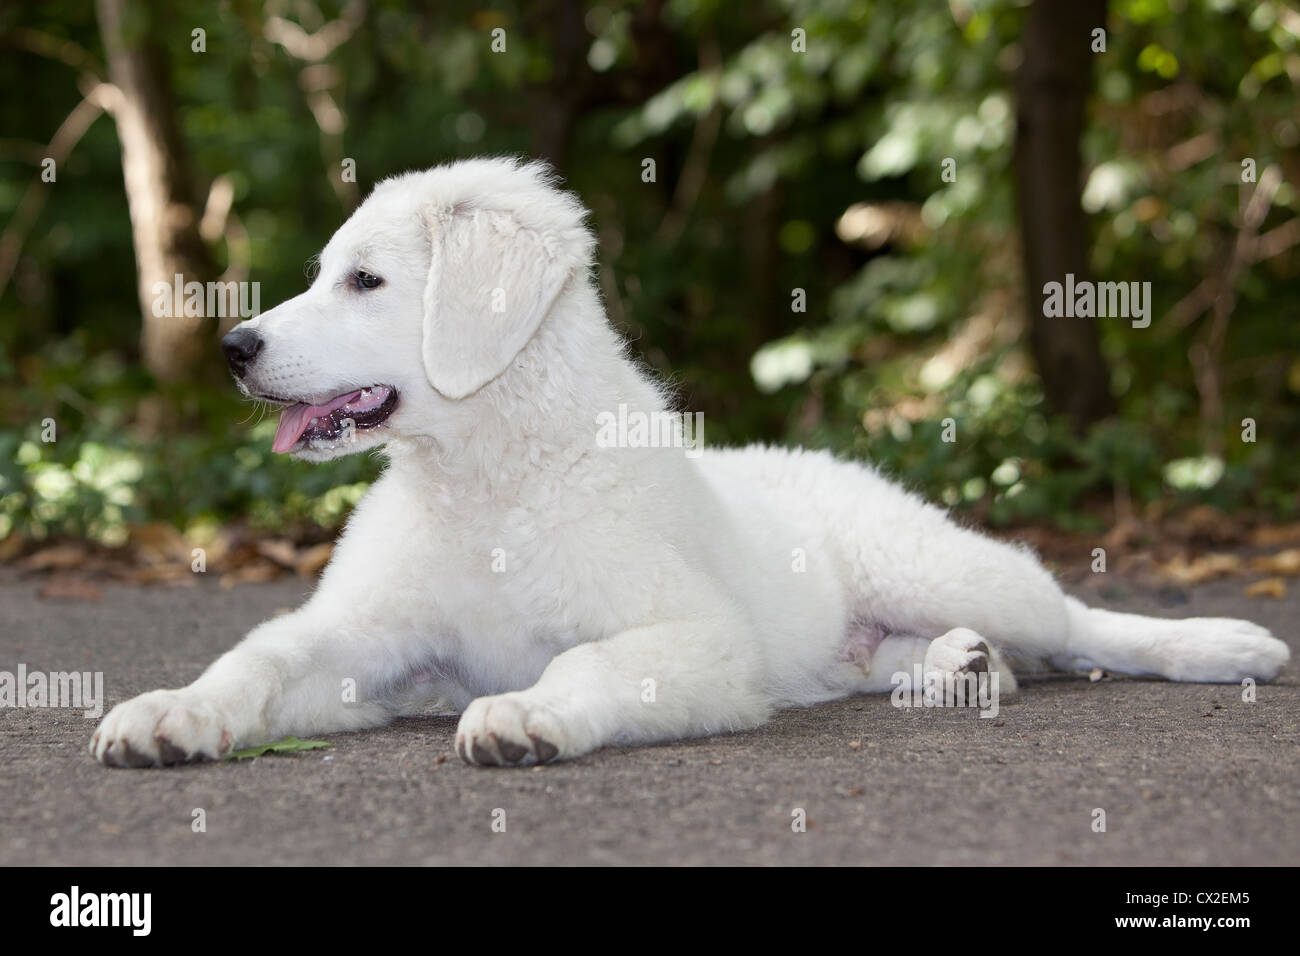 Kuvacz Hund Welpen puppies dog white sitting sitzend Wiese grün green grass aufmerksam attentively Stock Photo